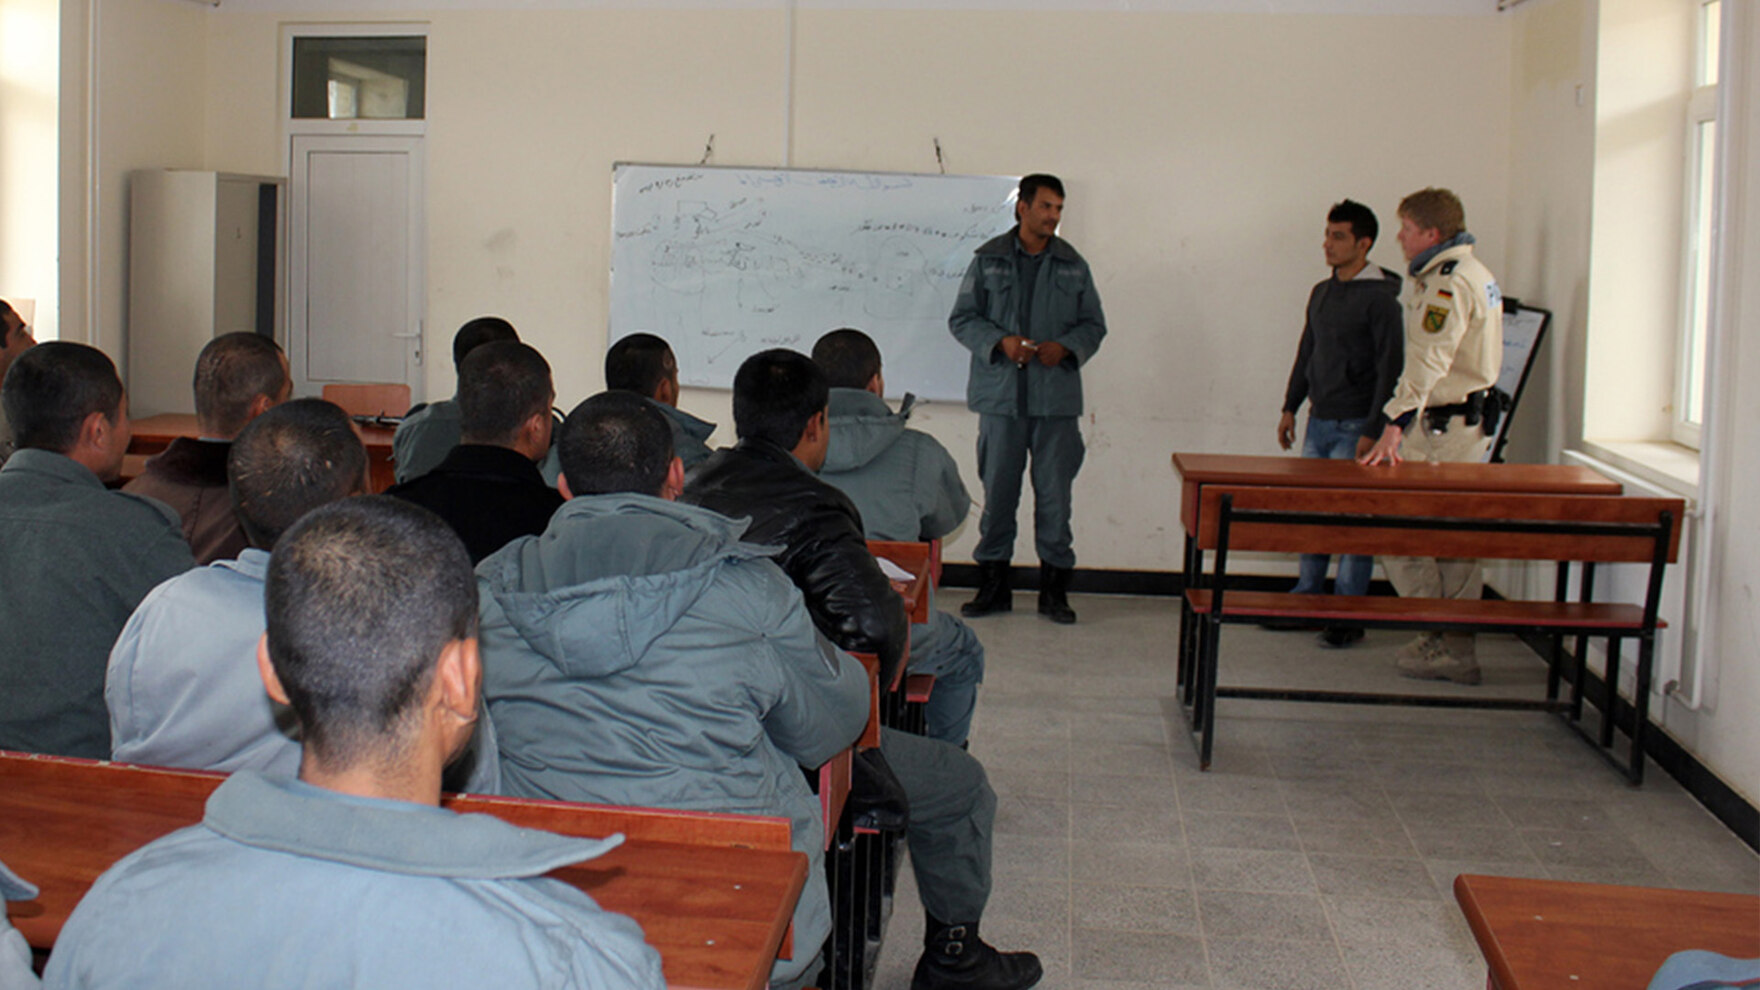 In einem Unterrichtsraum in Masar-e Scharif sitzen mehrere Männer an Bänken und schauen zu einer Gruppe von Personen vor einer Tafel. Auch ein sächsischer Polizist in heller Uniform steht vorne.